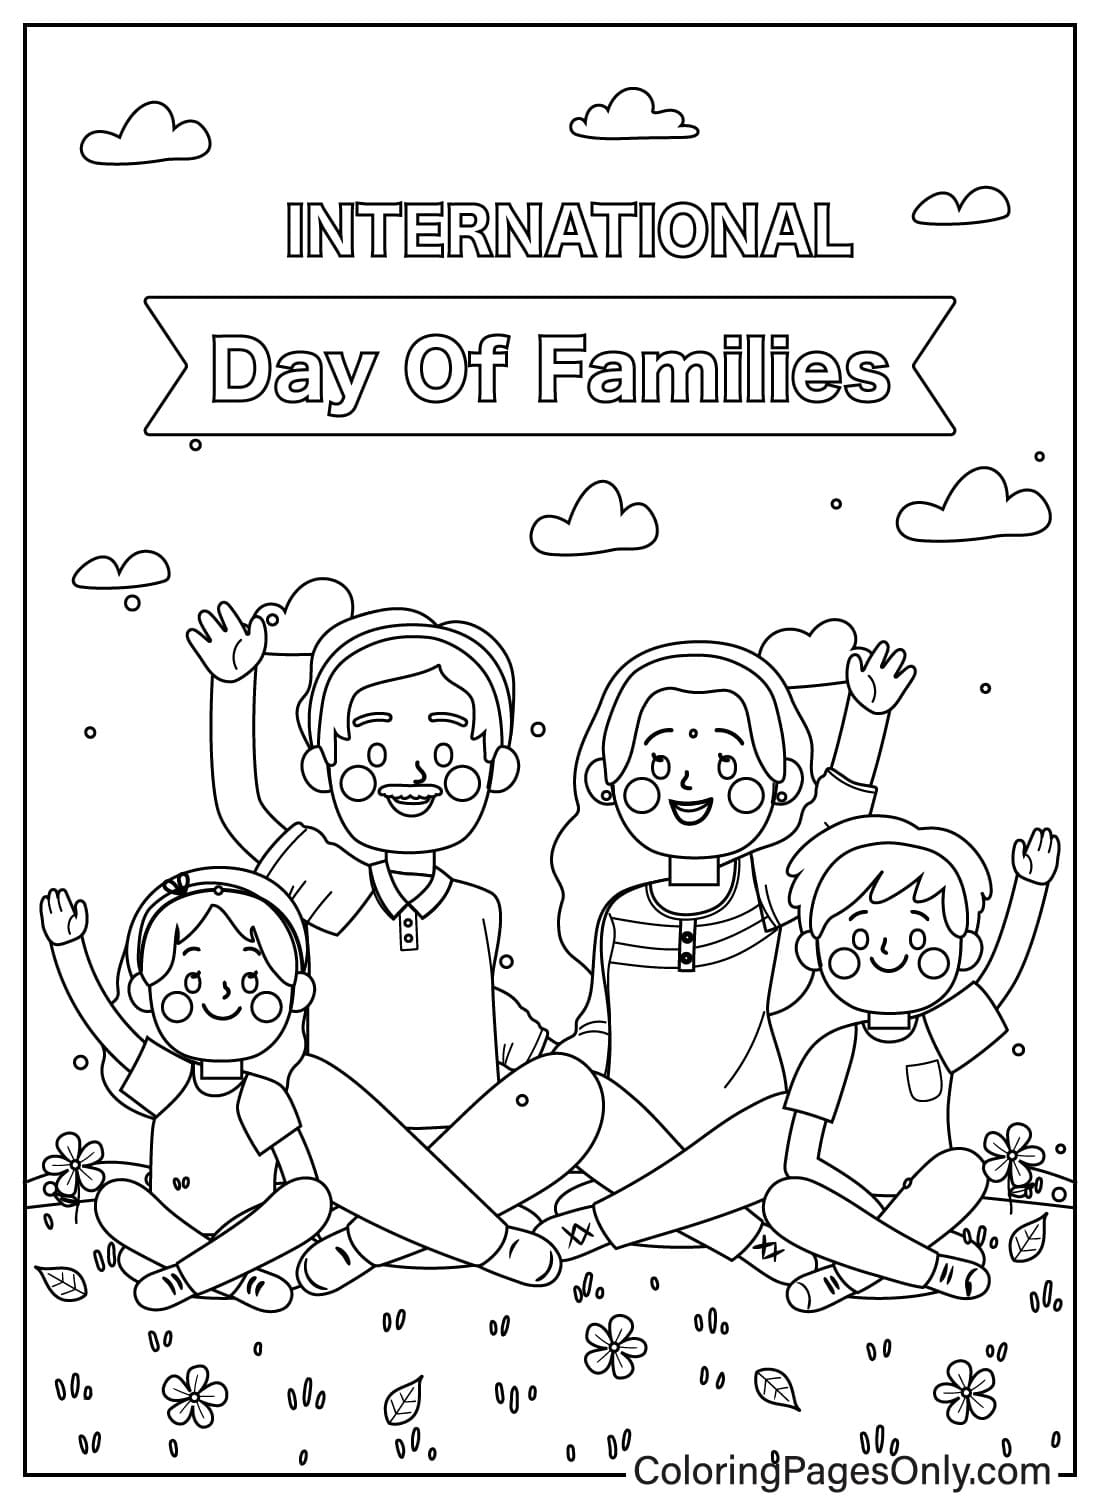 Página para colorear del Día de la Familia para imprimir desde el Día de la Familia